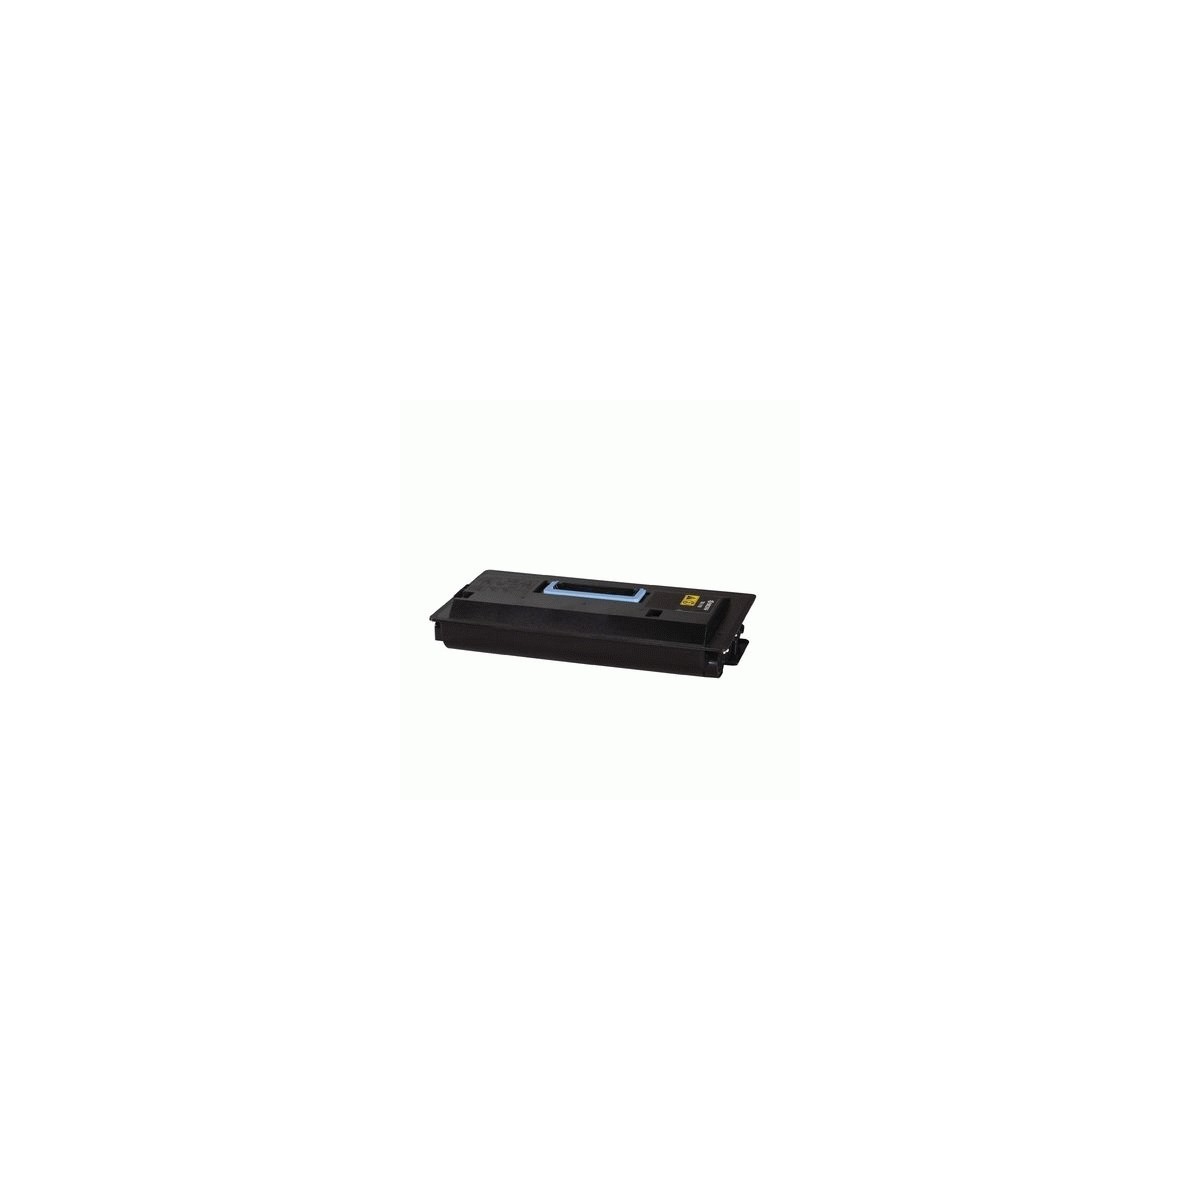 Kyocera TK 710 - Toner Cartridge Compatible, Original - Black - 40,000 pages